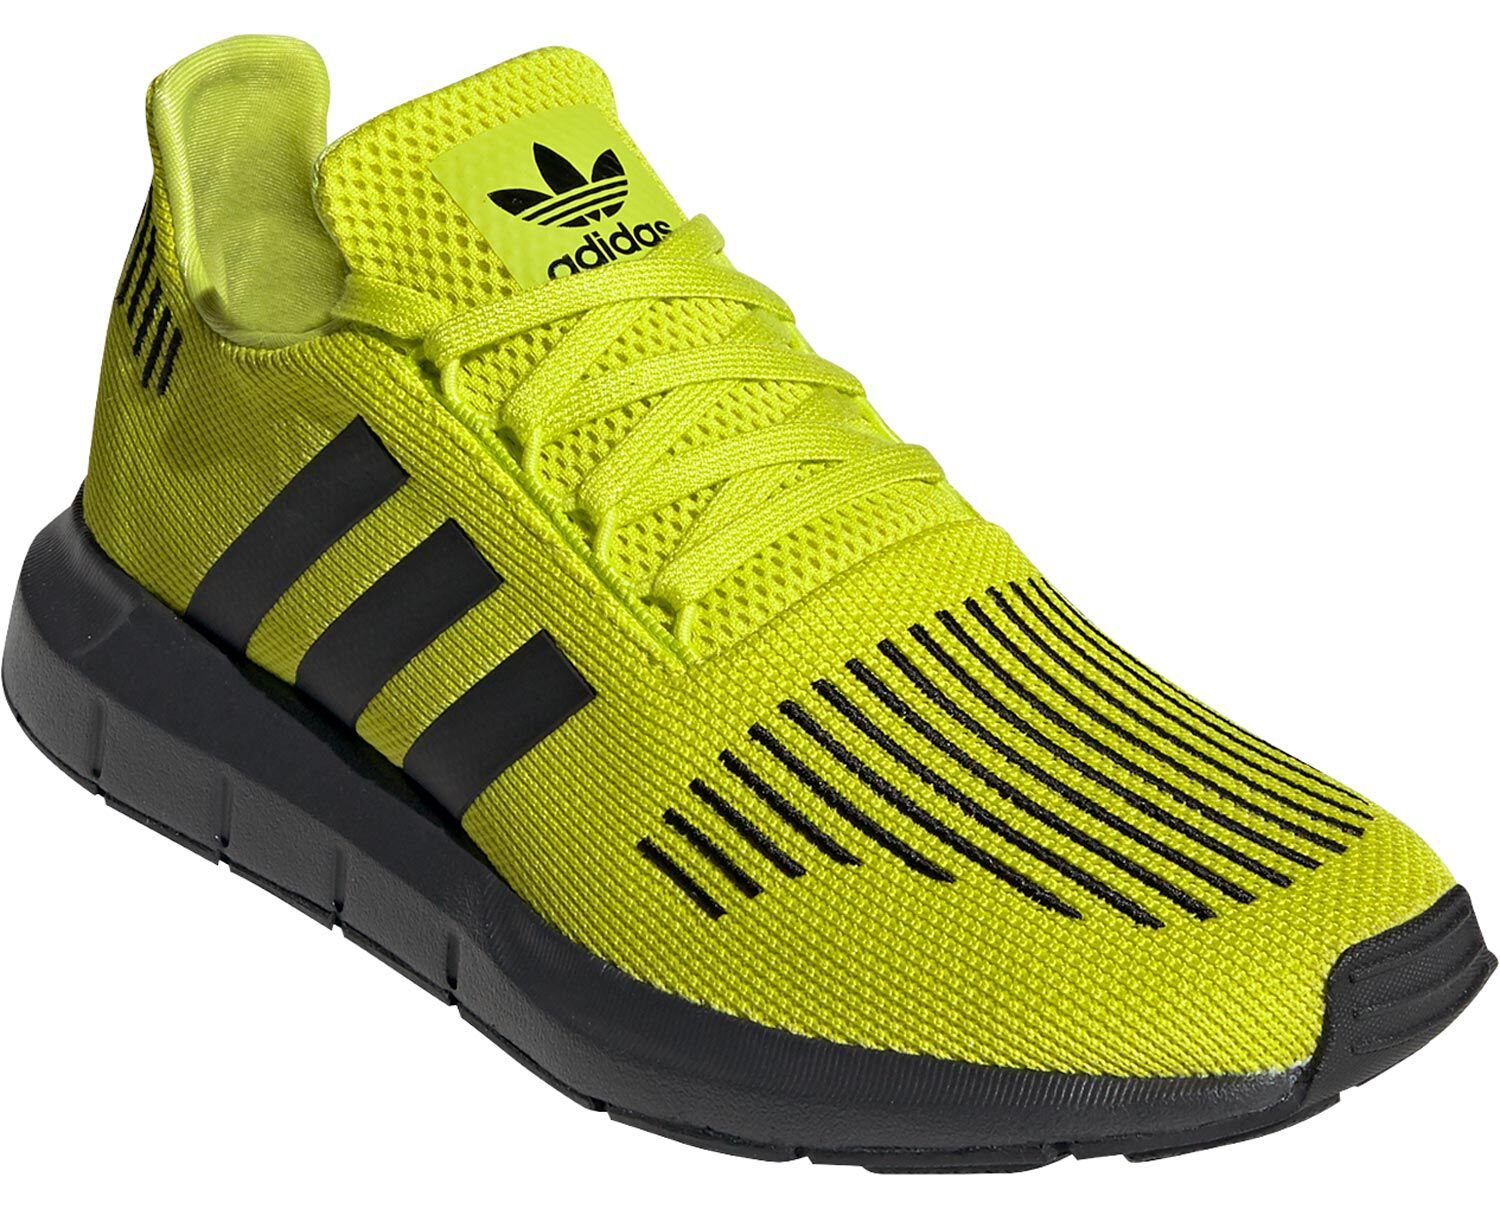 Adidas Swift Run Running Shoes Yellow Trainers